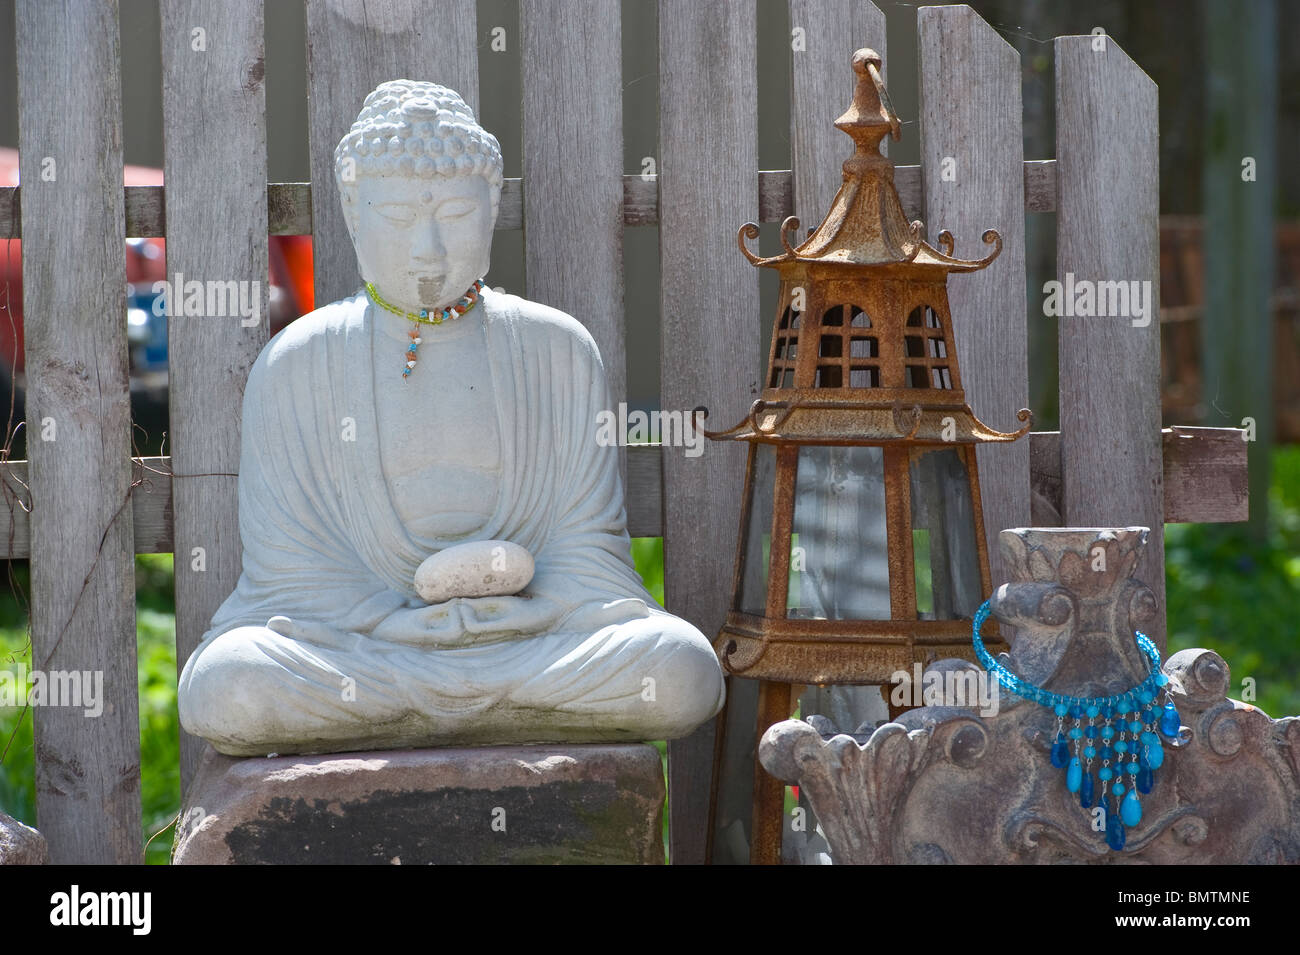 Statue des Buddha in einem Hinterhof, Michigan, USA Stockfoto